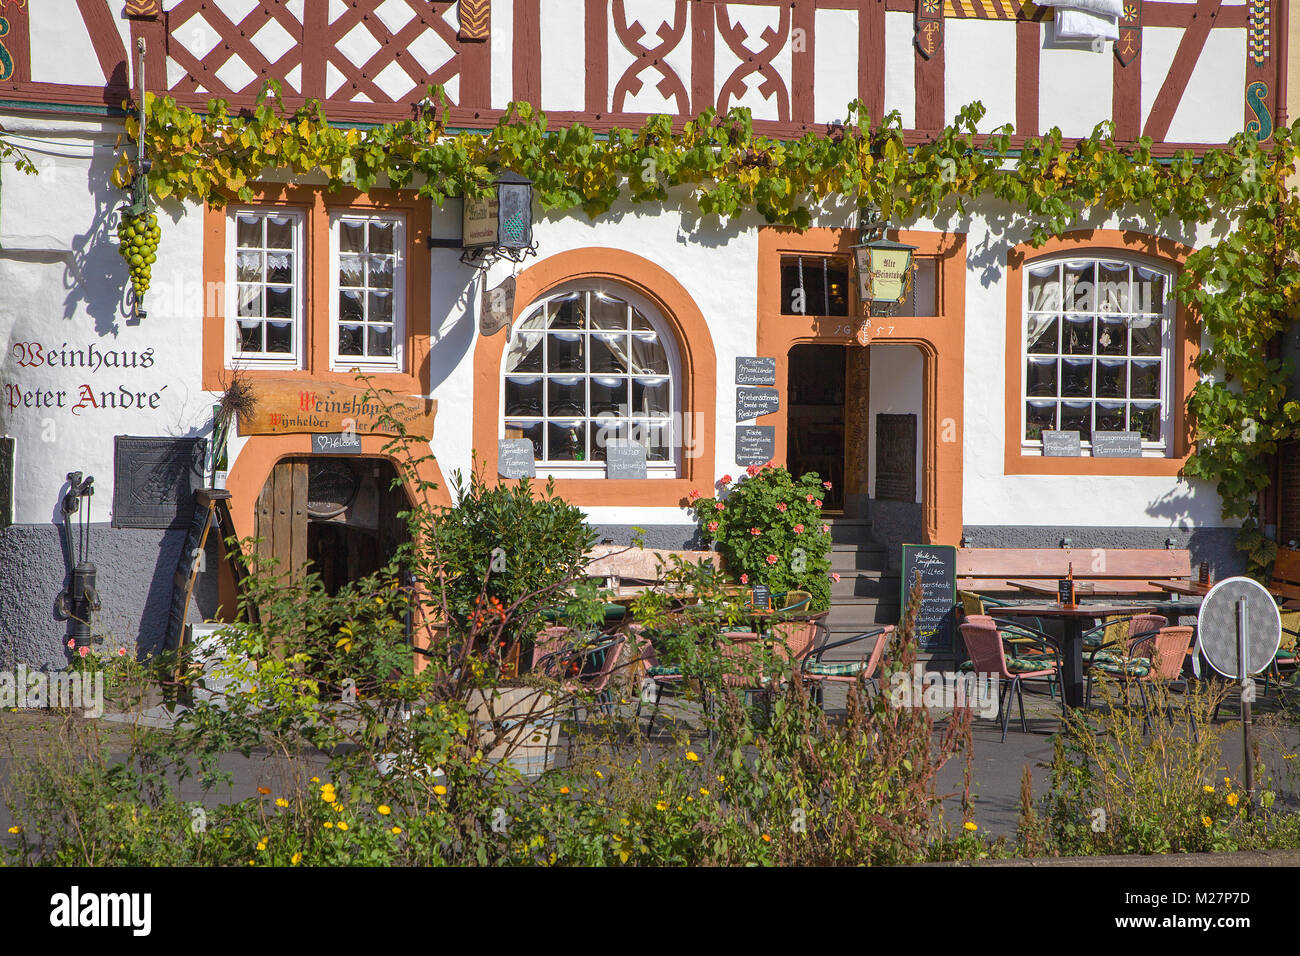 Houese Vin, maison à colombages village viticole de Lieser, Moselle, Rhénanie-Palatinat, Allemagne, Europe Banque D'Images